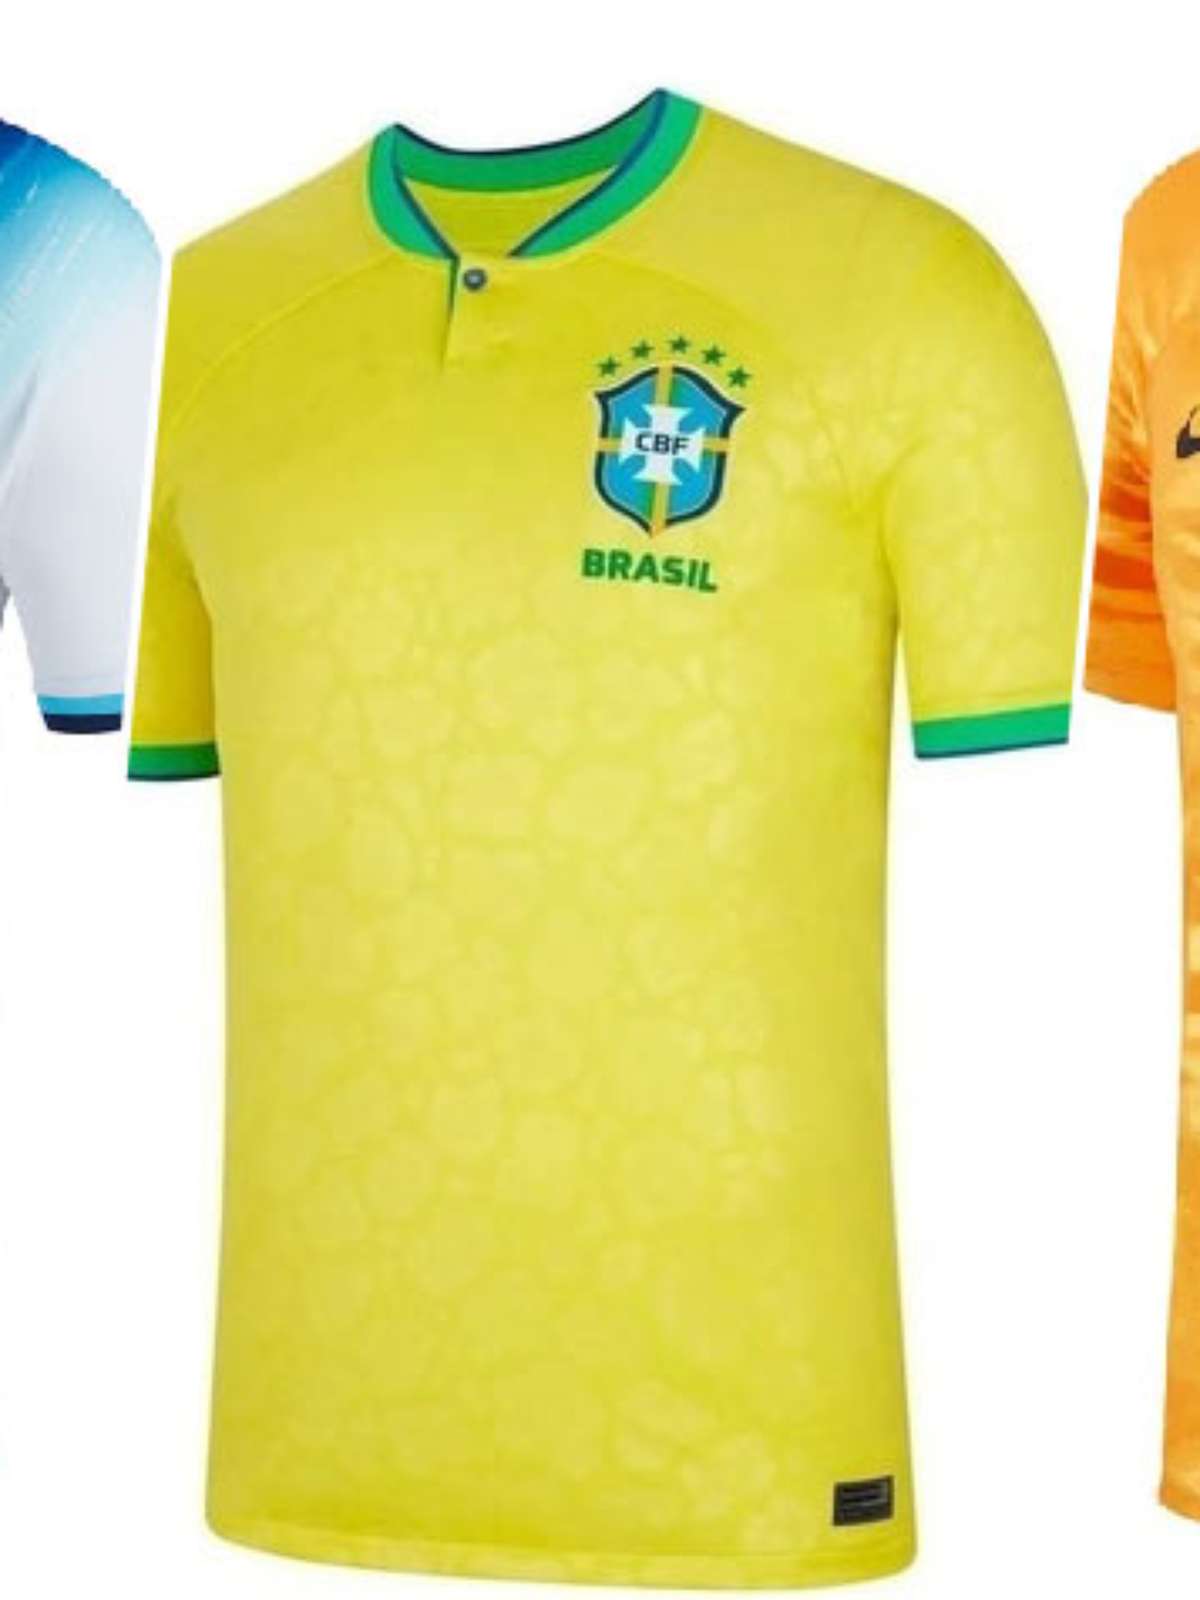 Veja as camisas de todas as seleções para a Copa do Mundo 2022 – LANCE!